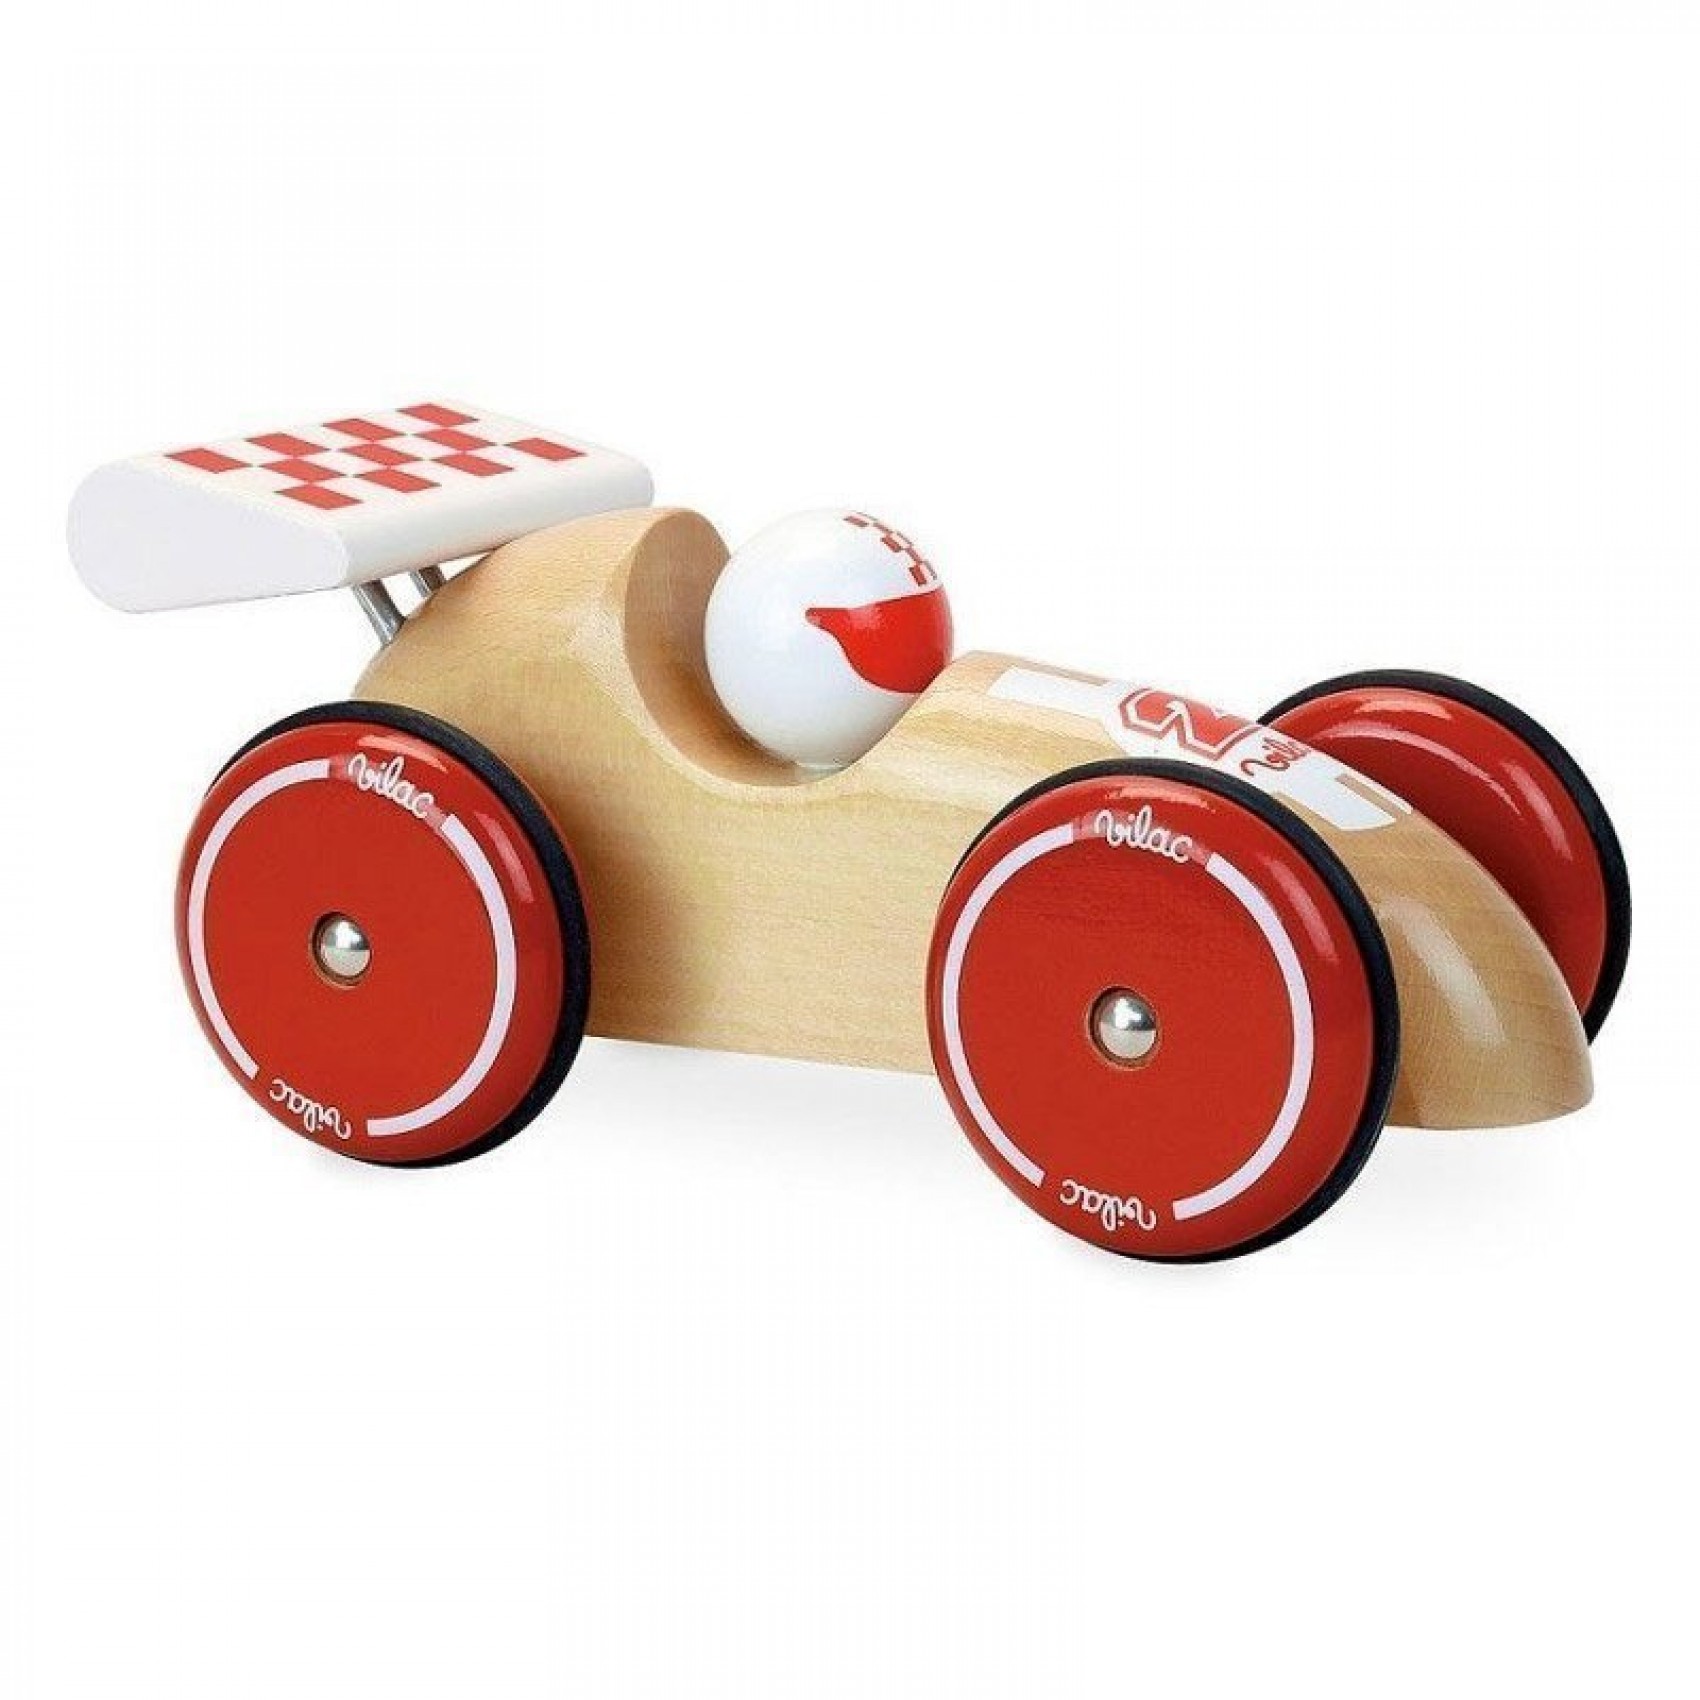 Les jouets en bois Voiture de course de voitures en bois faire